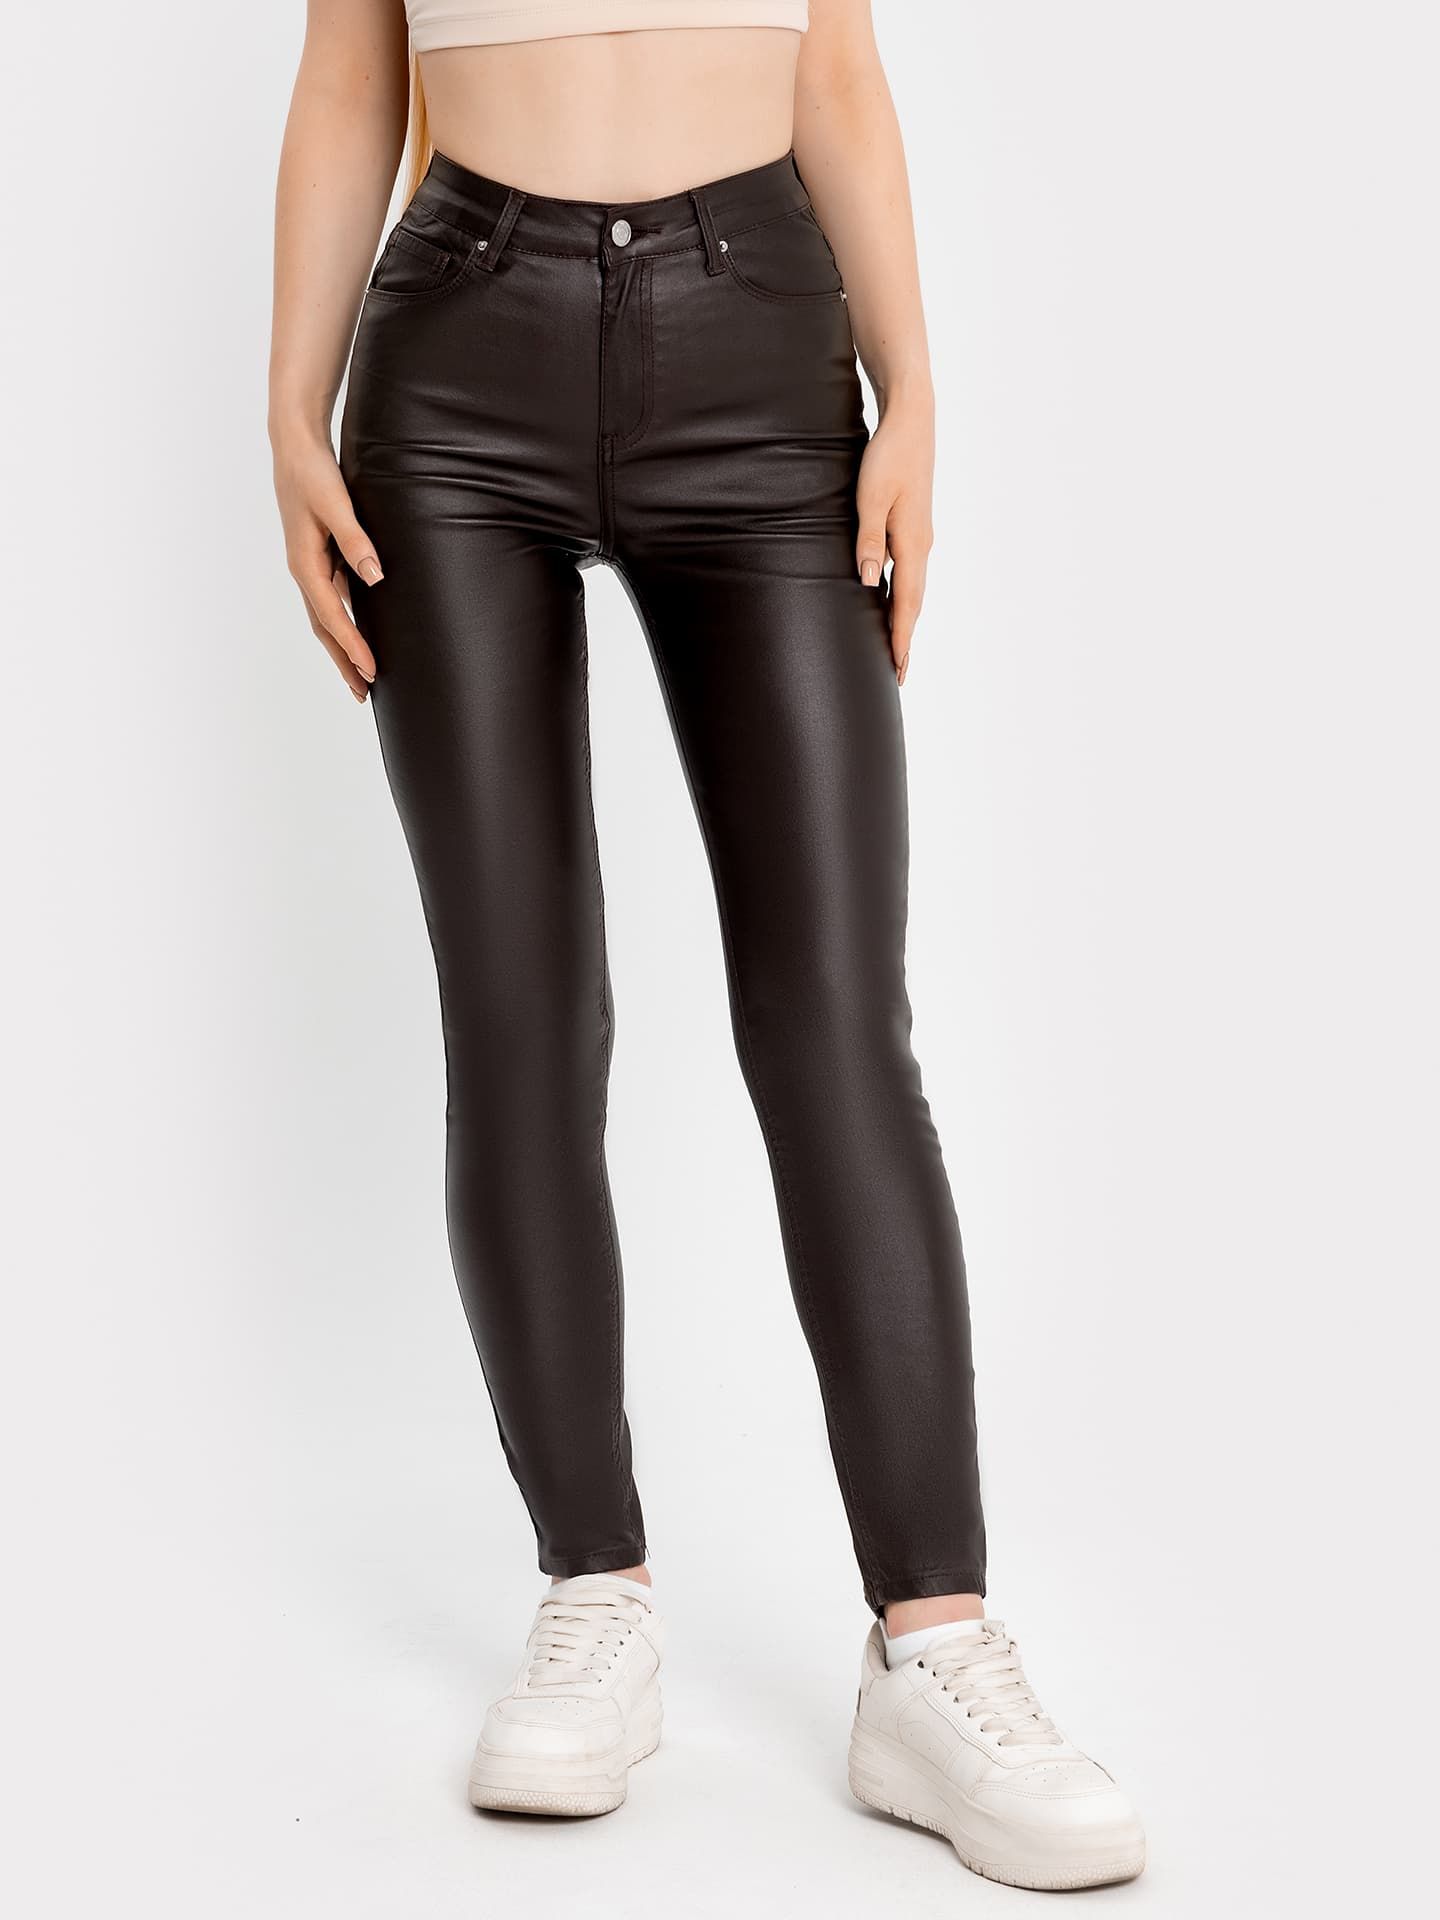 

Брюки женские джинсовые коричневые, Коричневый, 2023-DTW1802-1